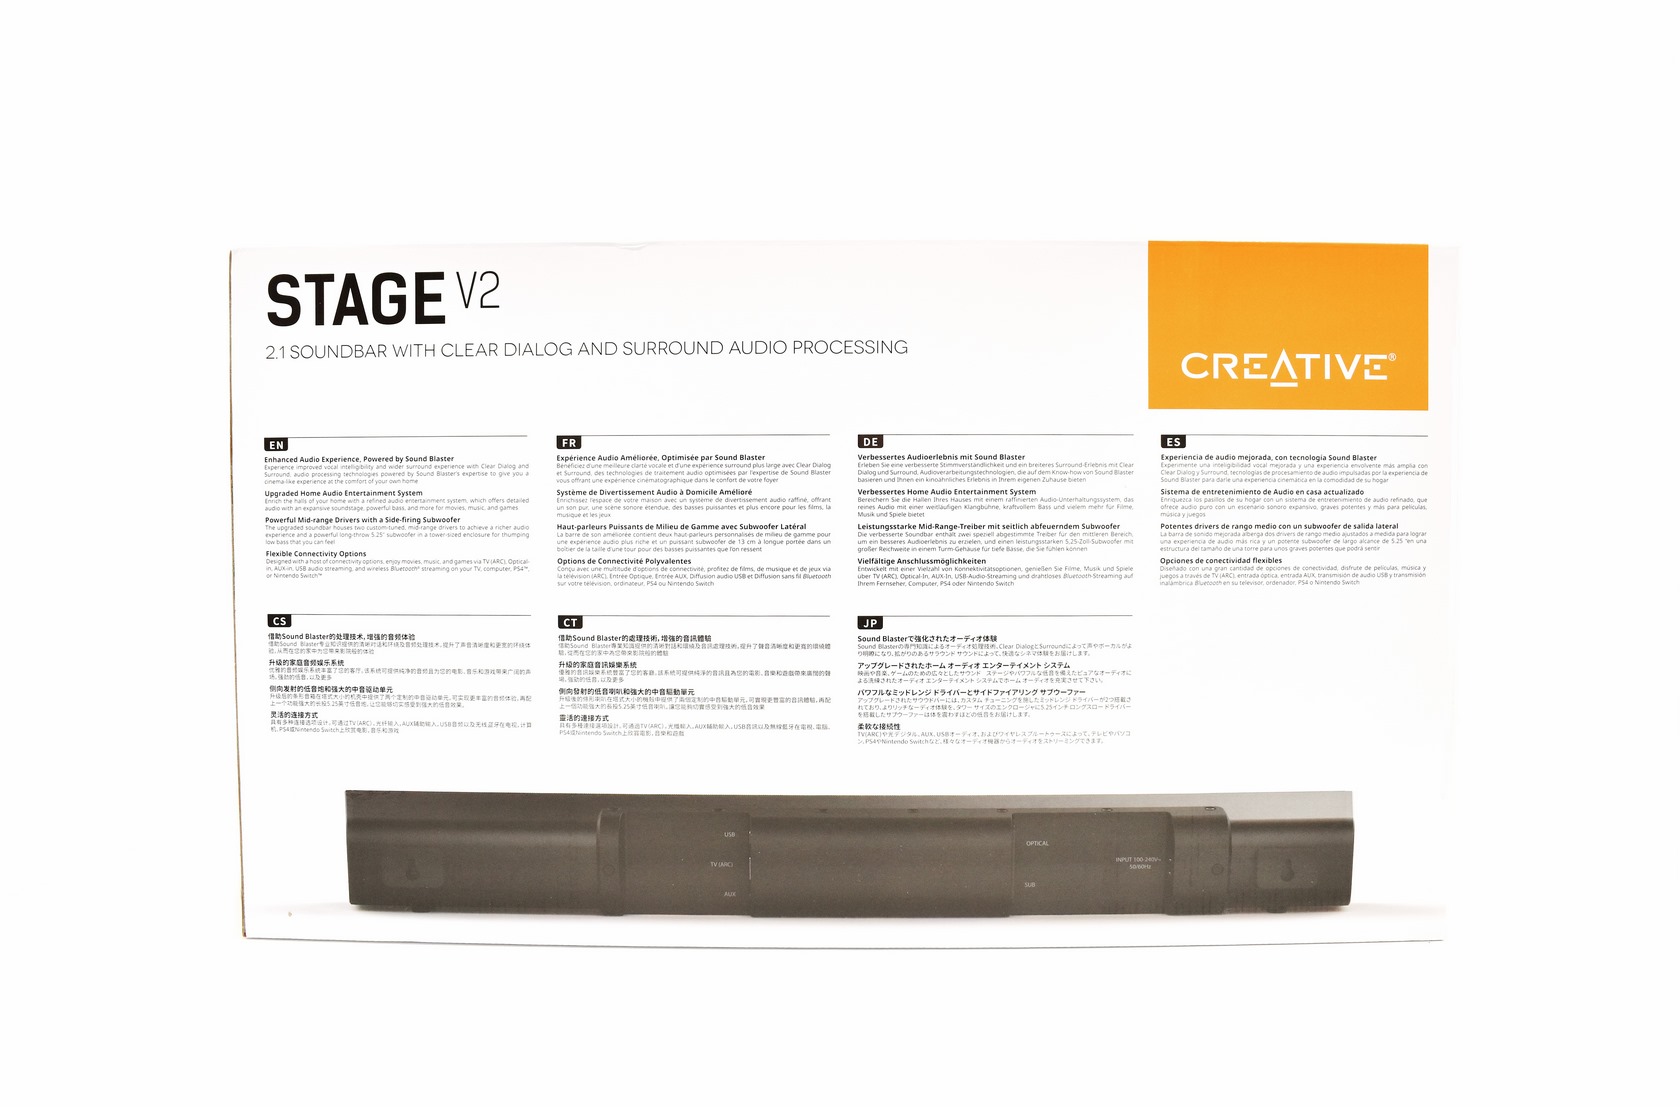 Review Soundbar V2 Stage Creative 2.1